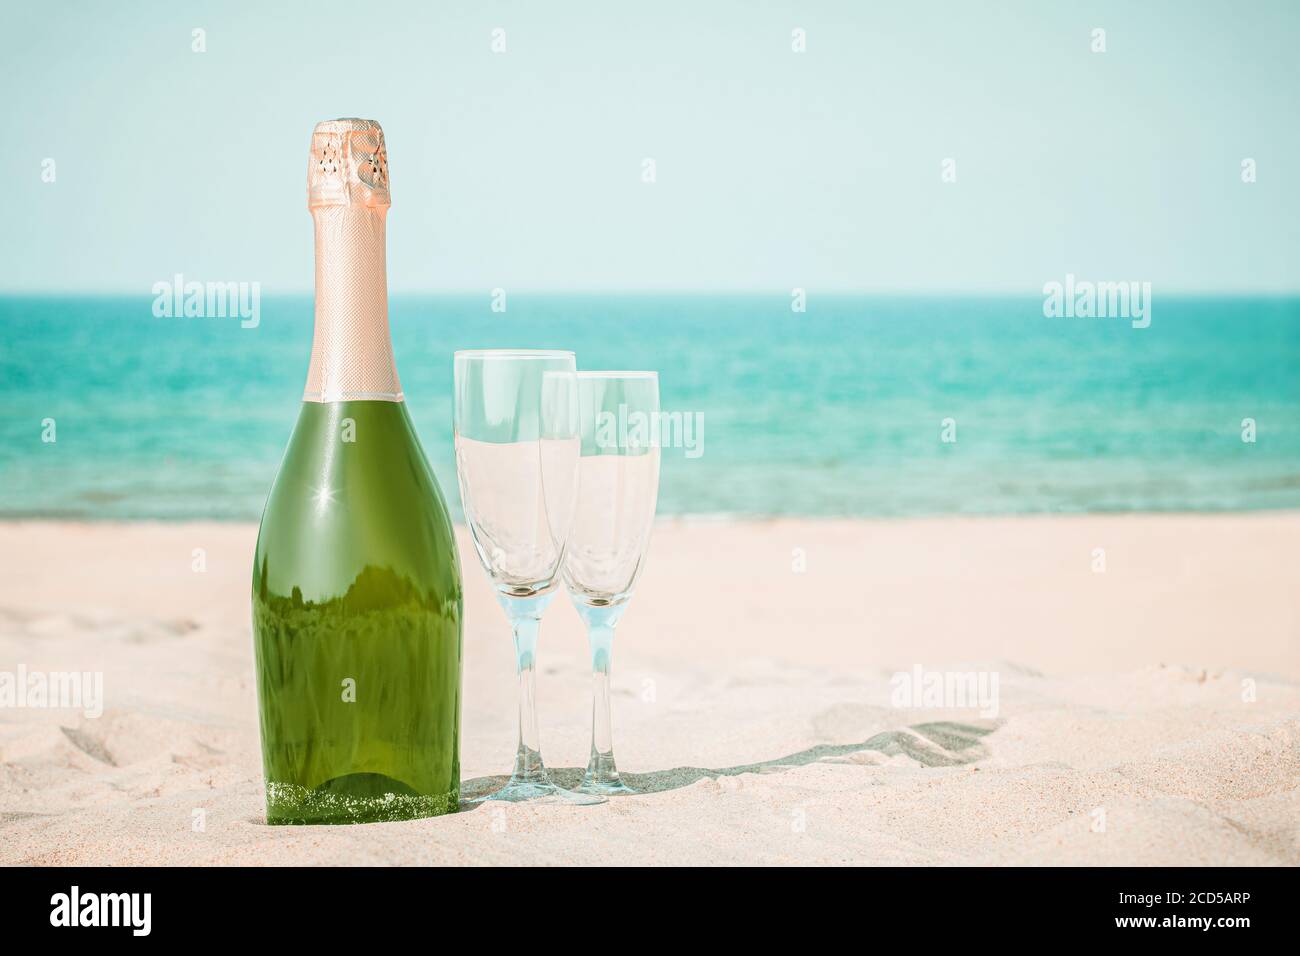 Deux verres et une bouteille de champagne sur sable blanc sur le fond de l'océan Banque D'Images